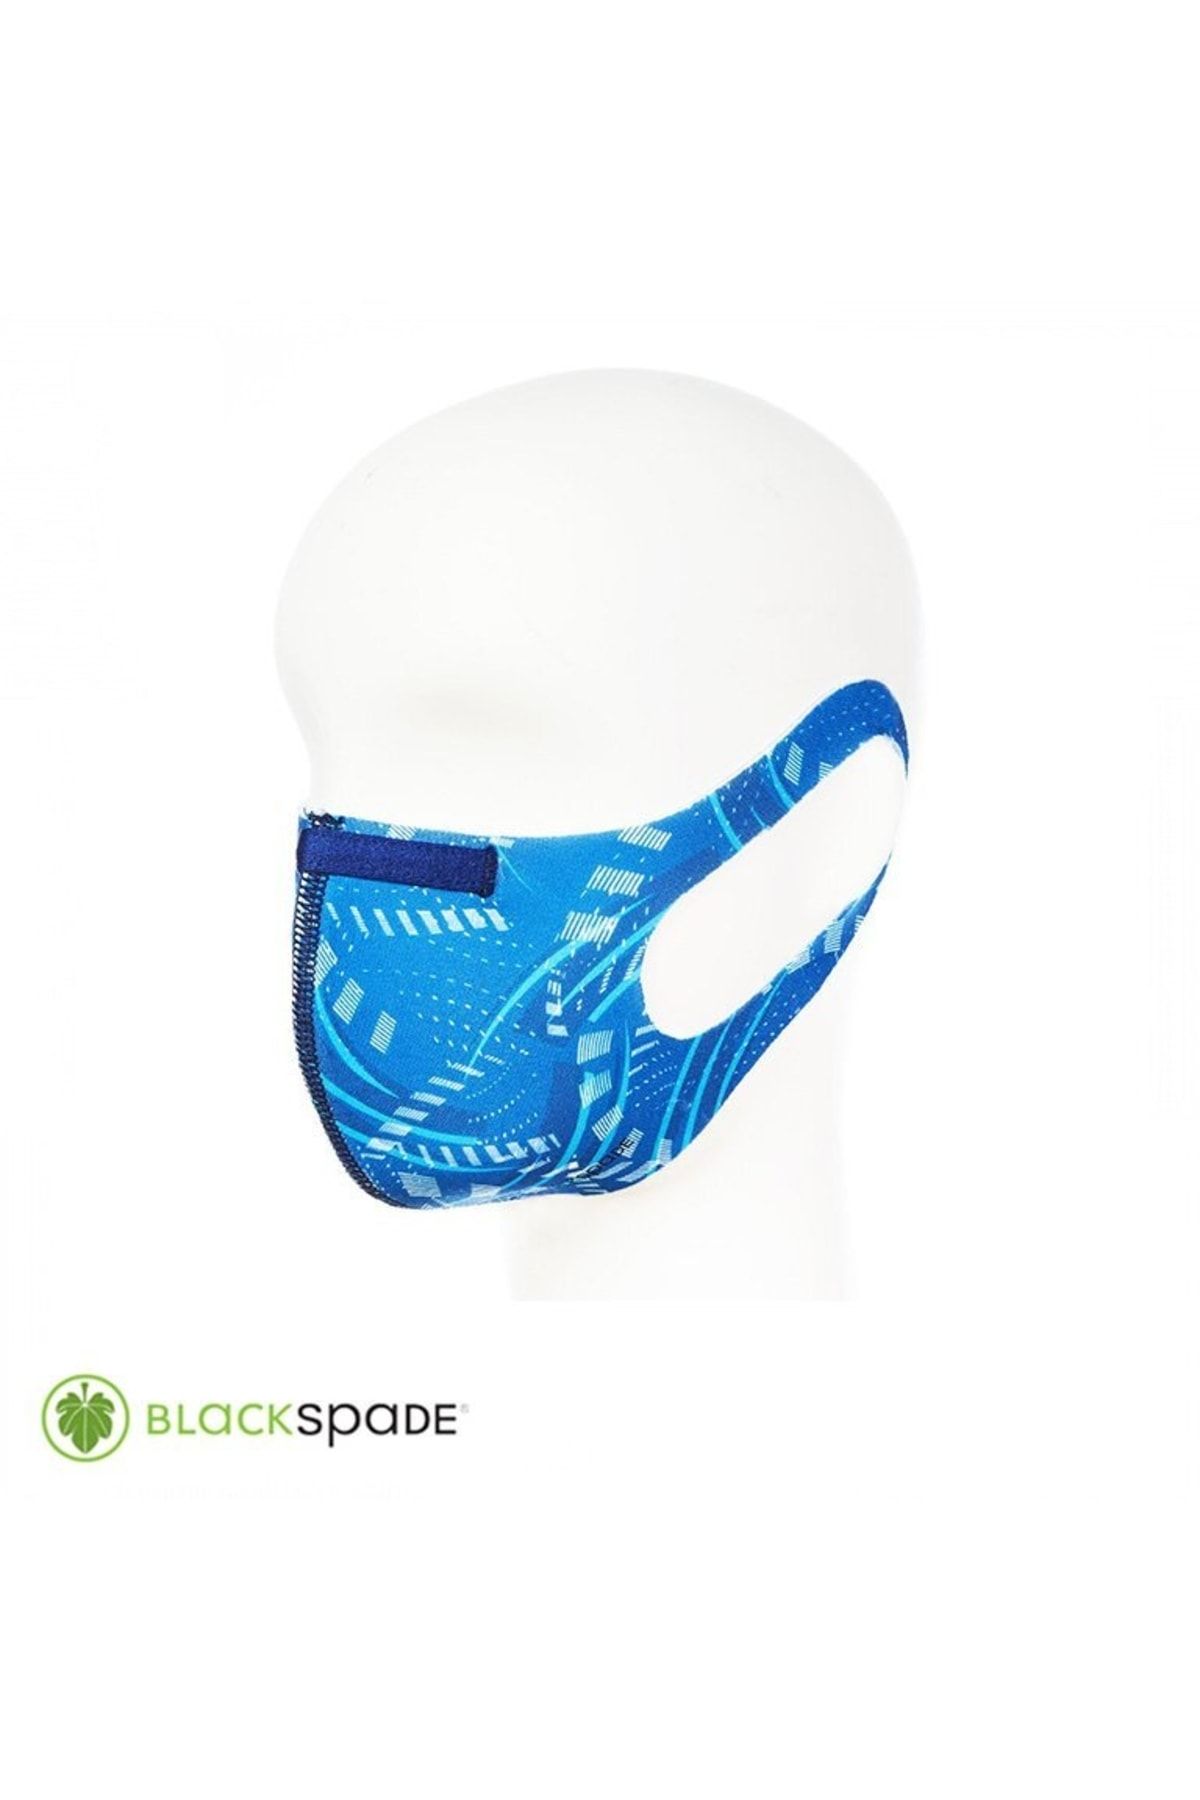 Blackspade Unisex Koruyucu Maske Işık Desen L